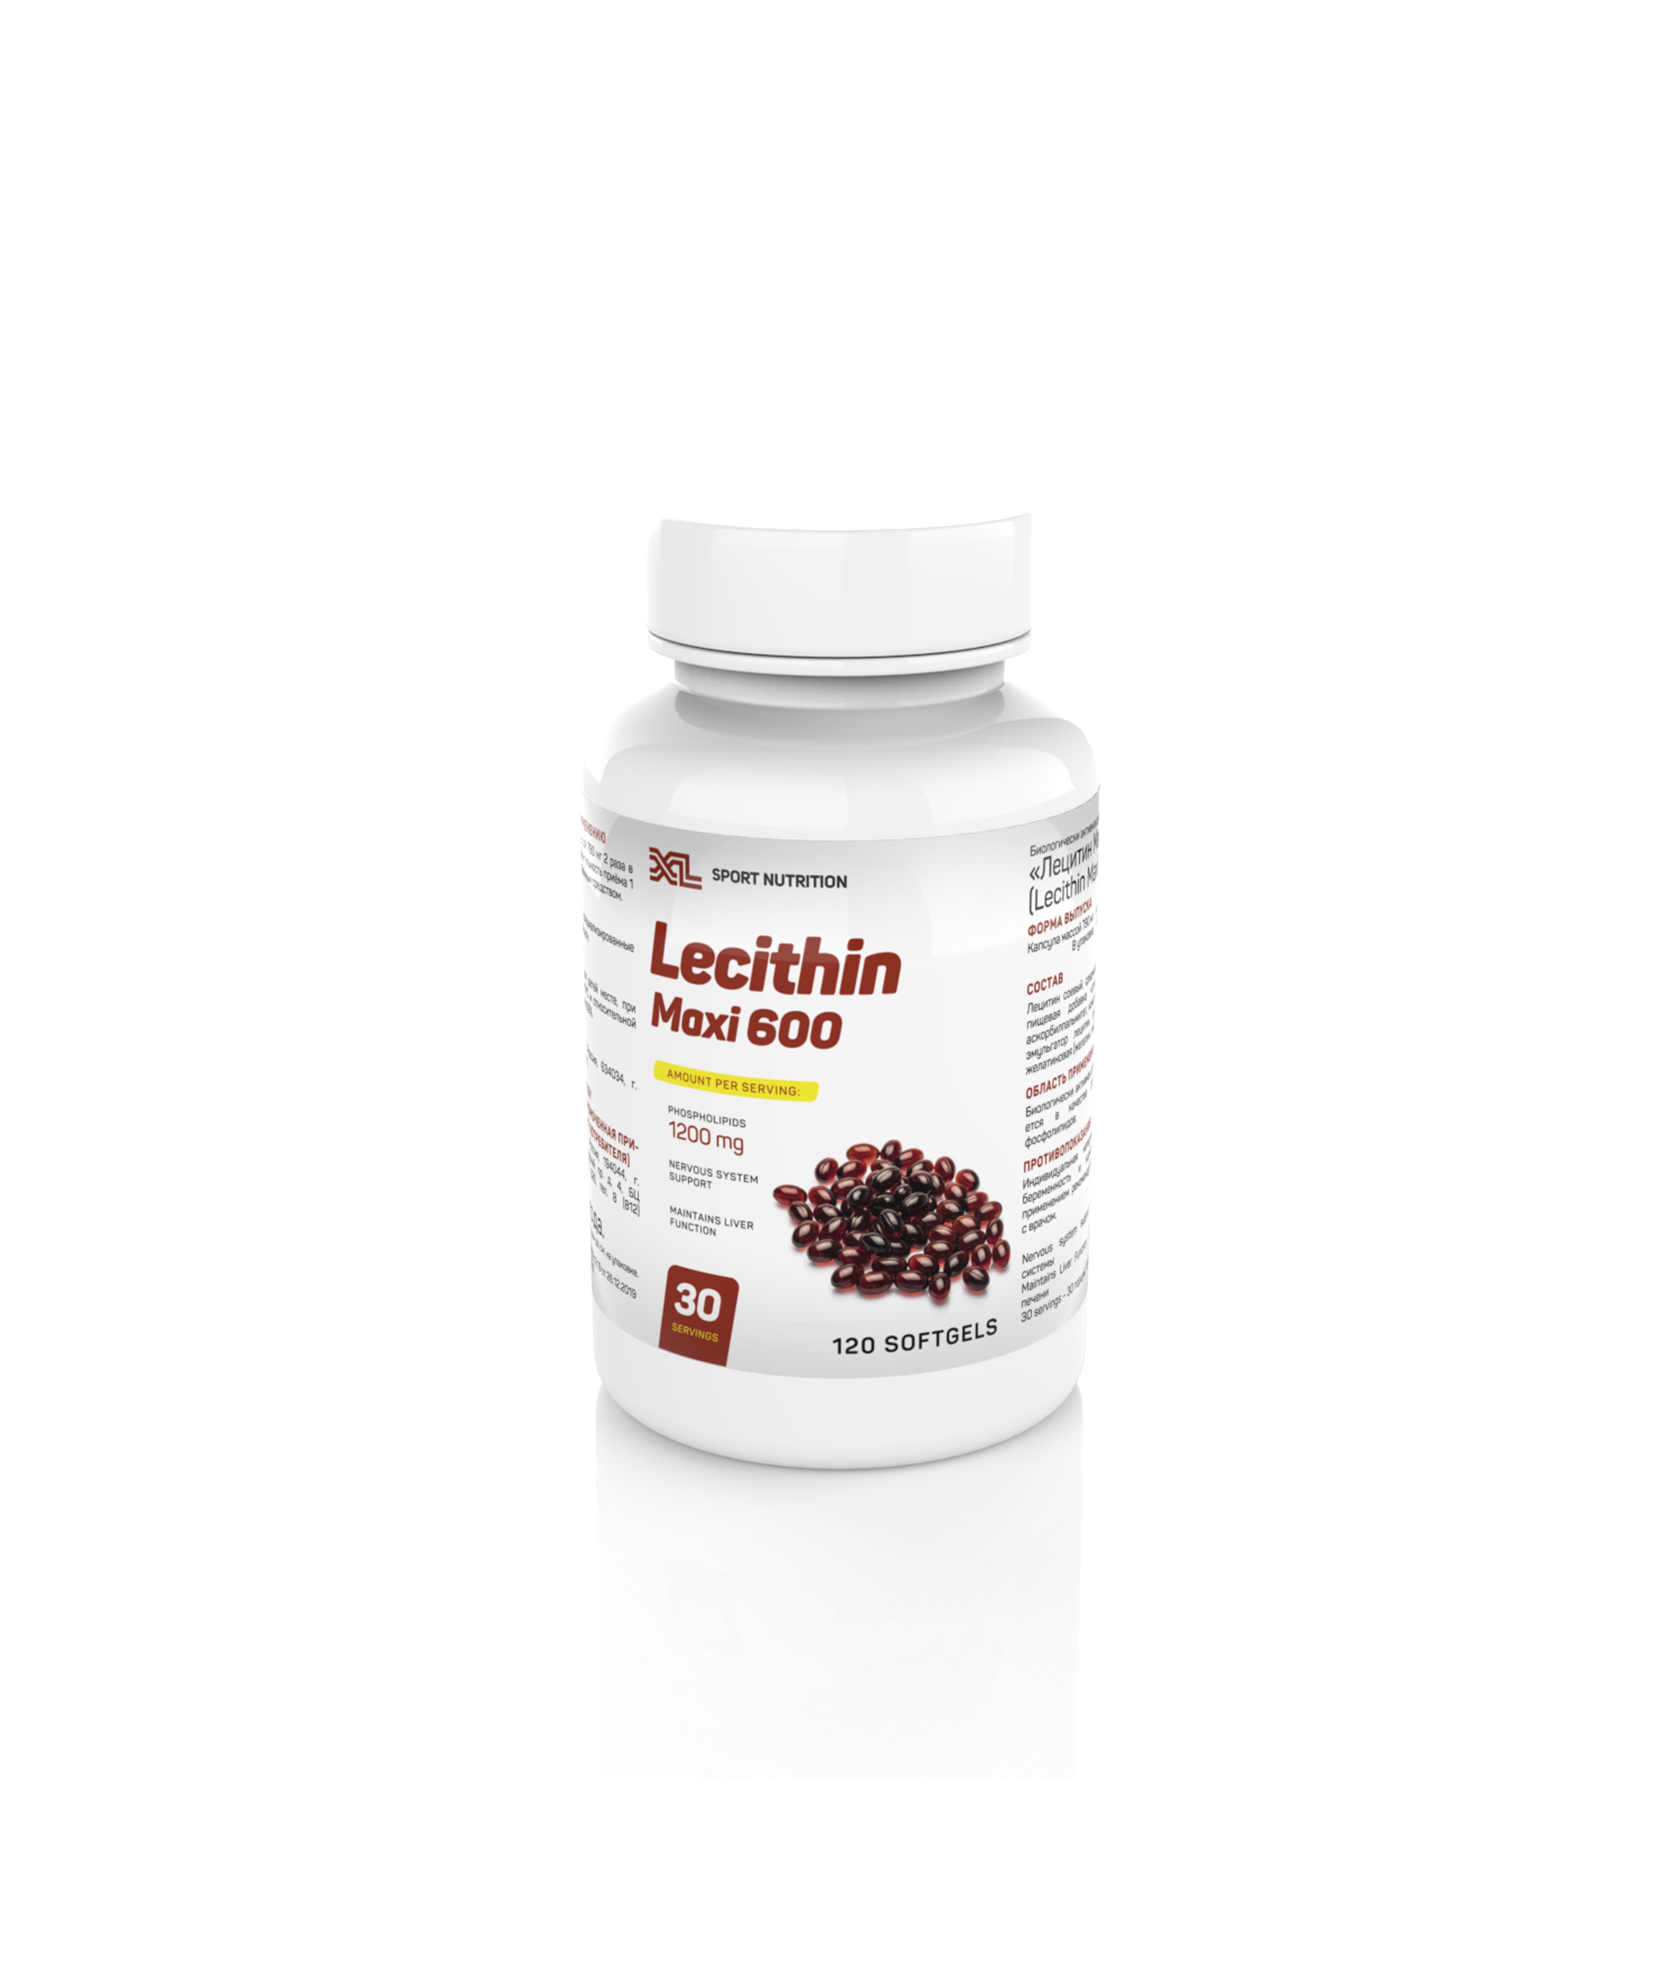 XL Lecithin, 120 capsules